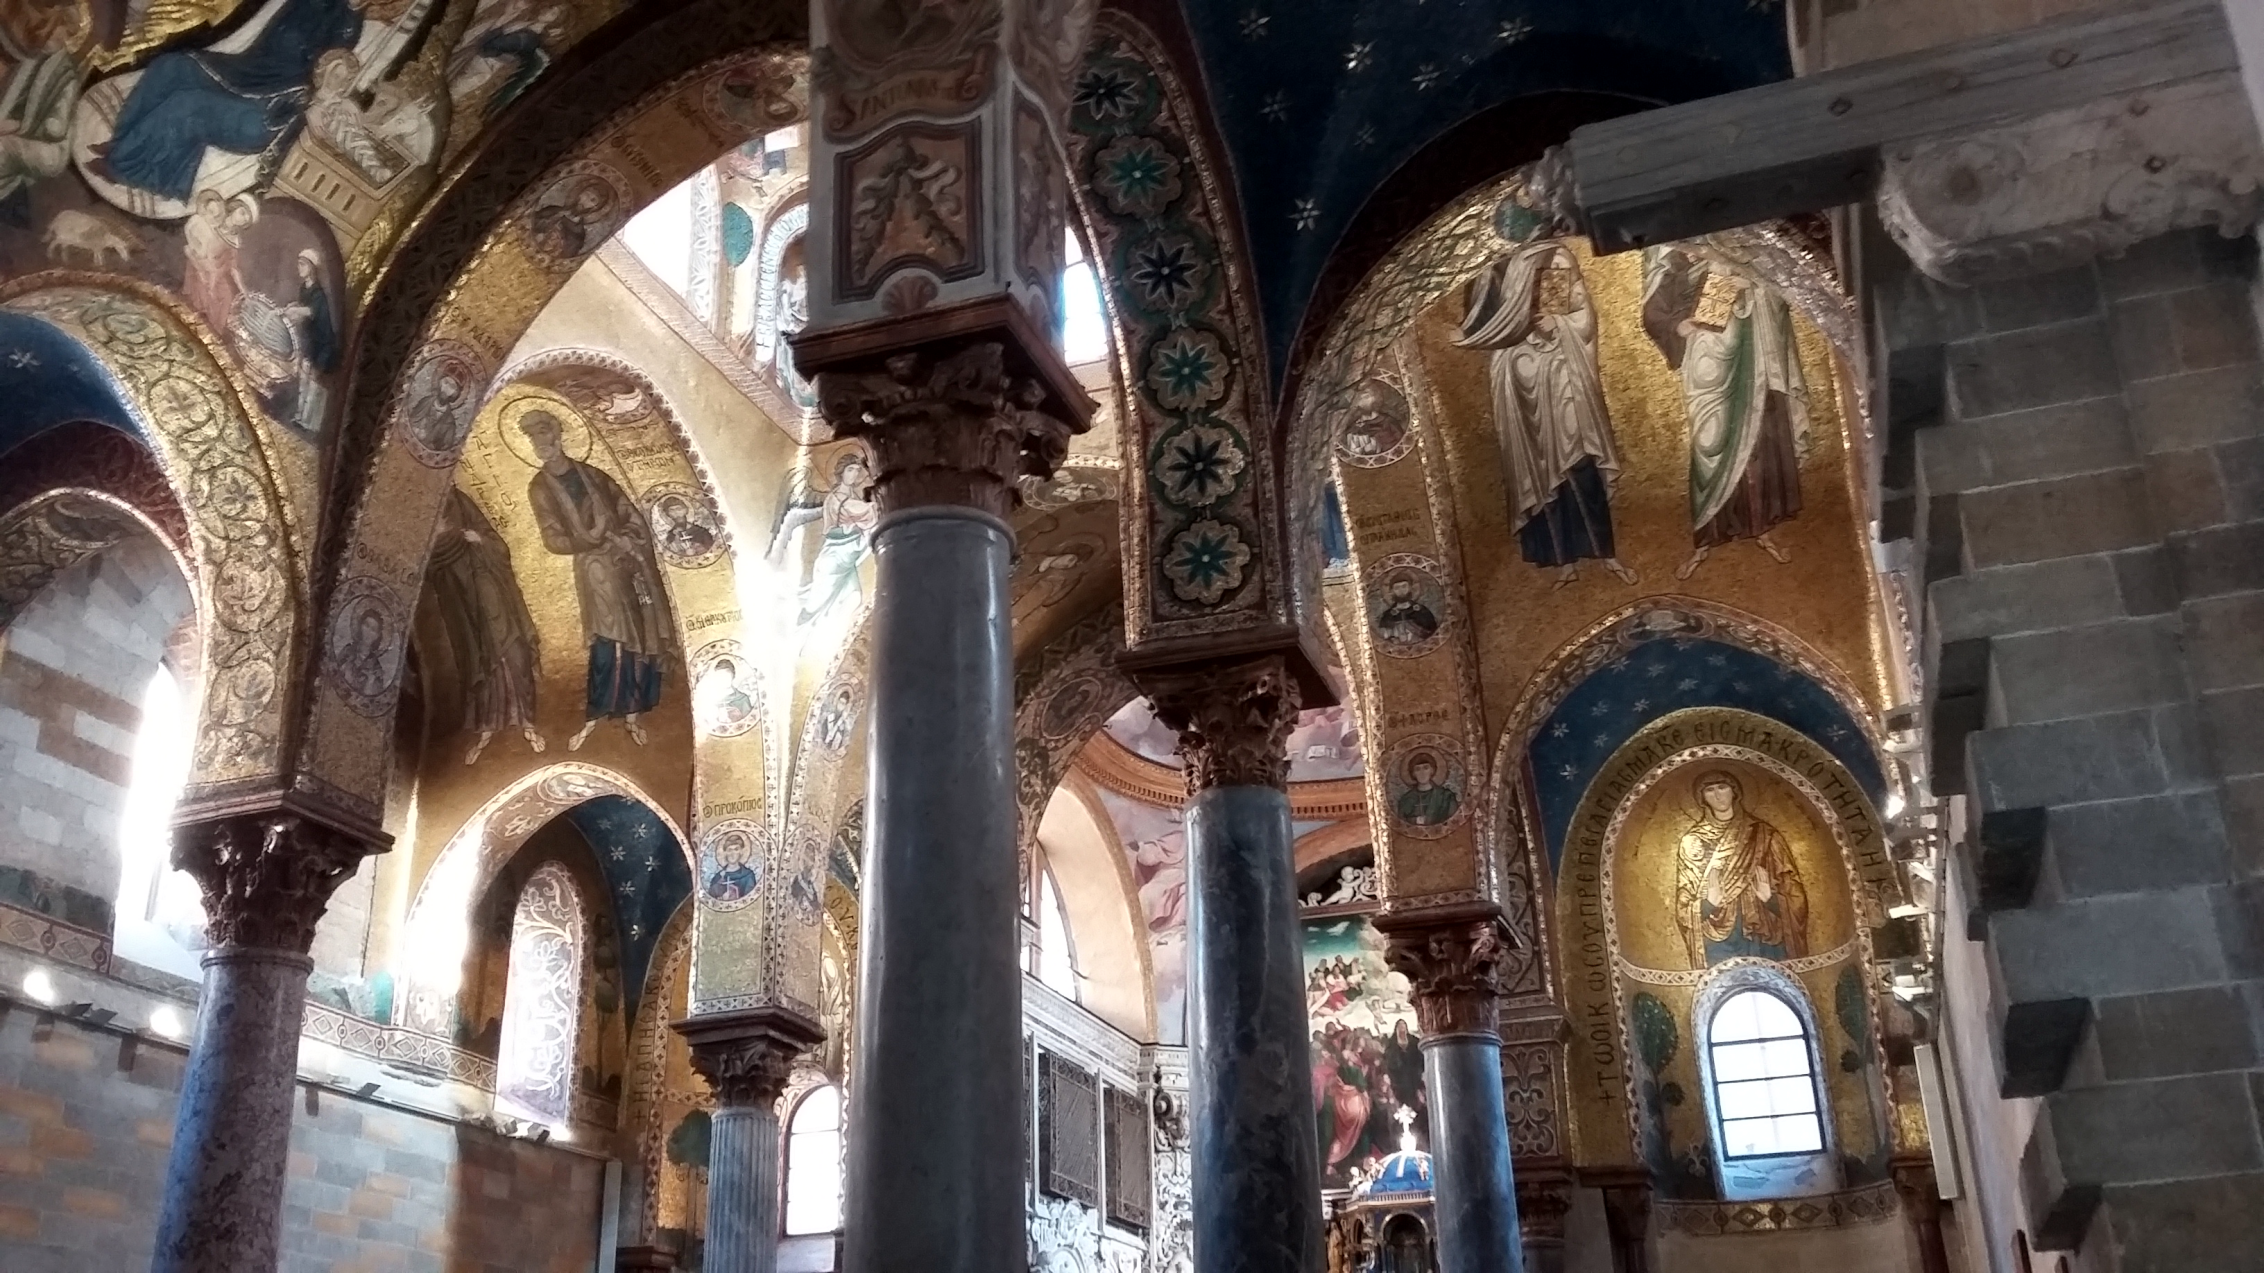 Sicilia turistica insolita e sconosciuta - Chiesa di S. Maria dell'Ammiraglio (Martorana o S. Nicolò dei Greci):  interno della chiesa.